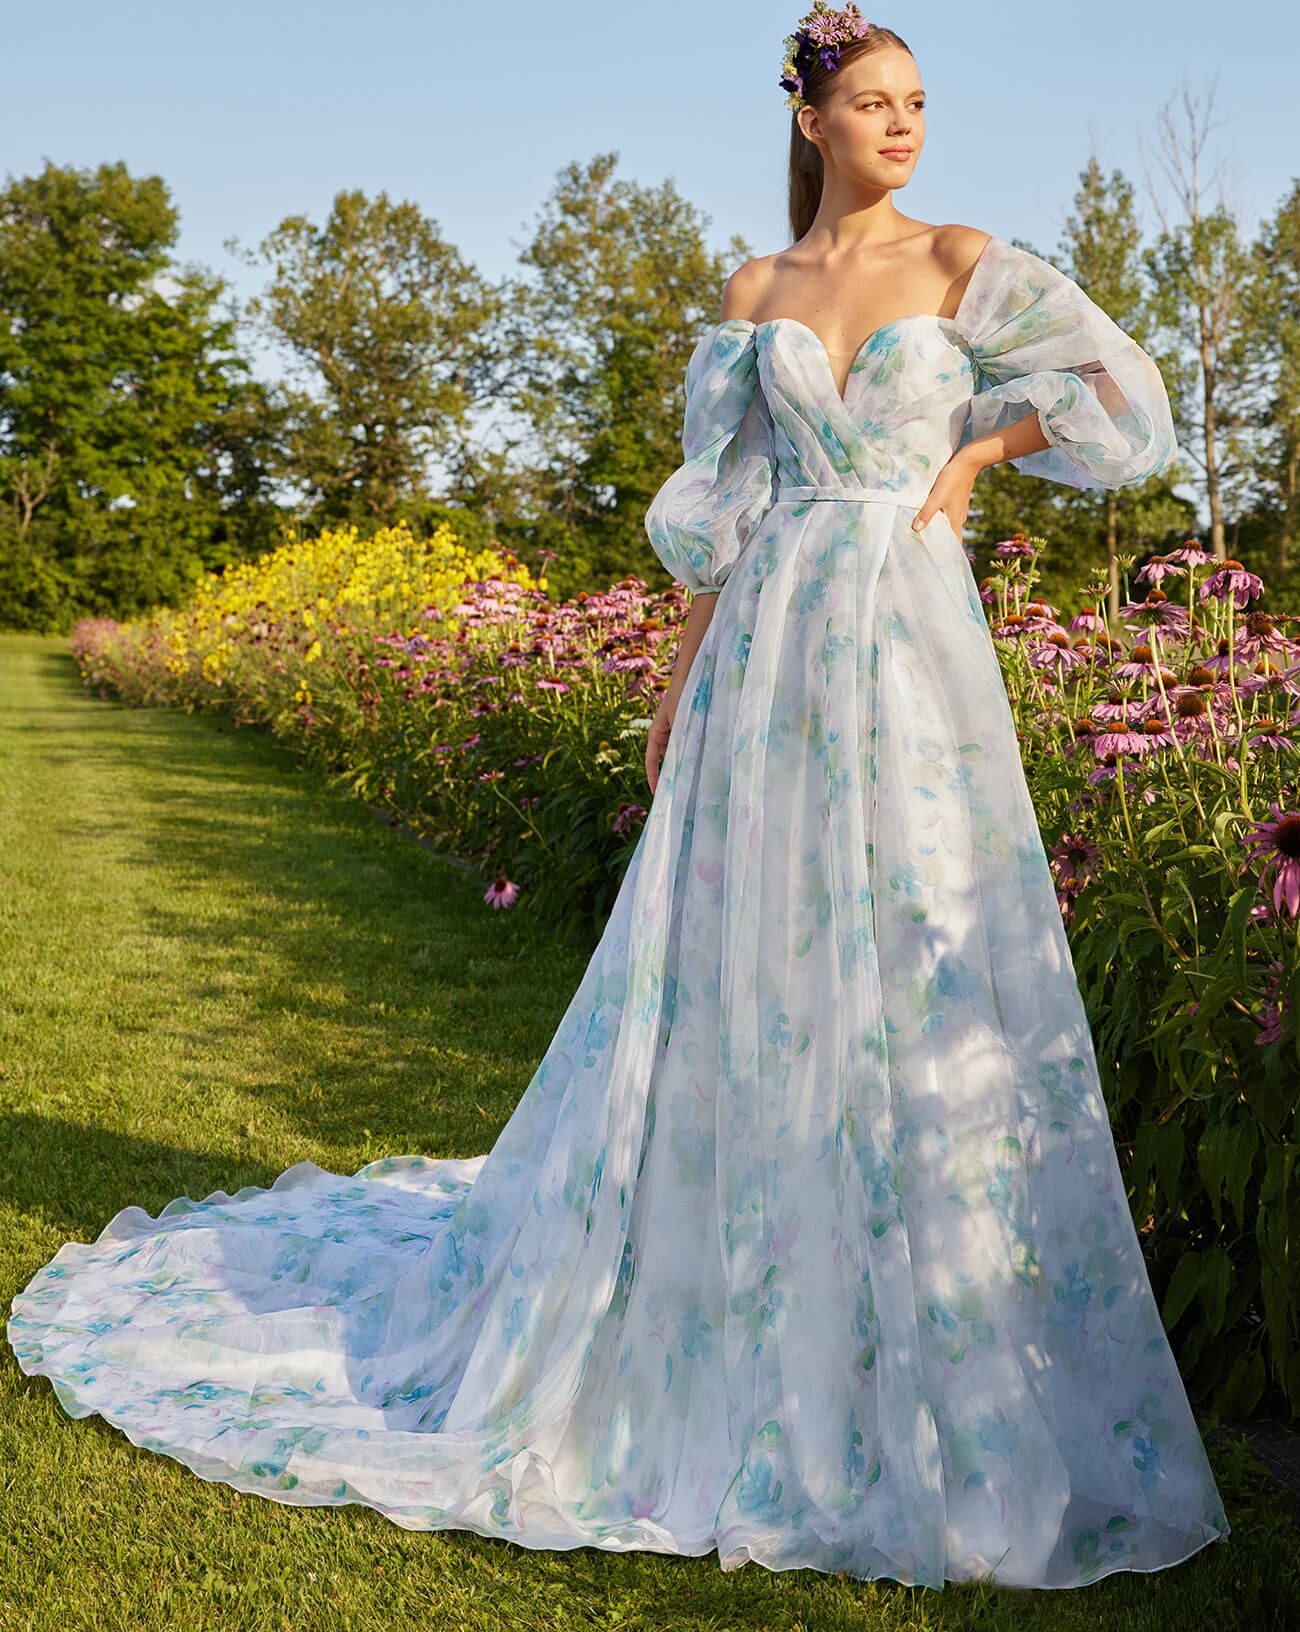 Calla Blanche Misty New Wedding Dress Save 39% - Stillwhite